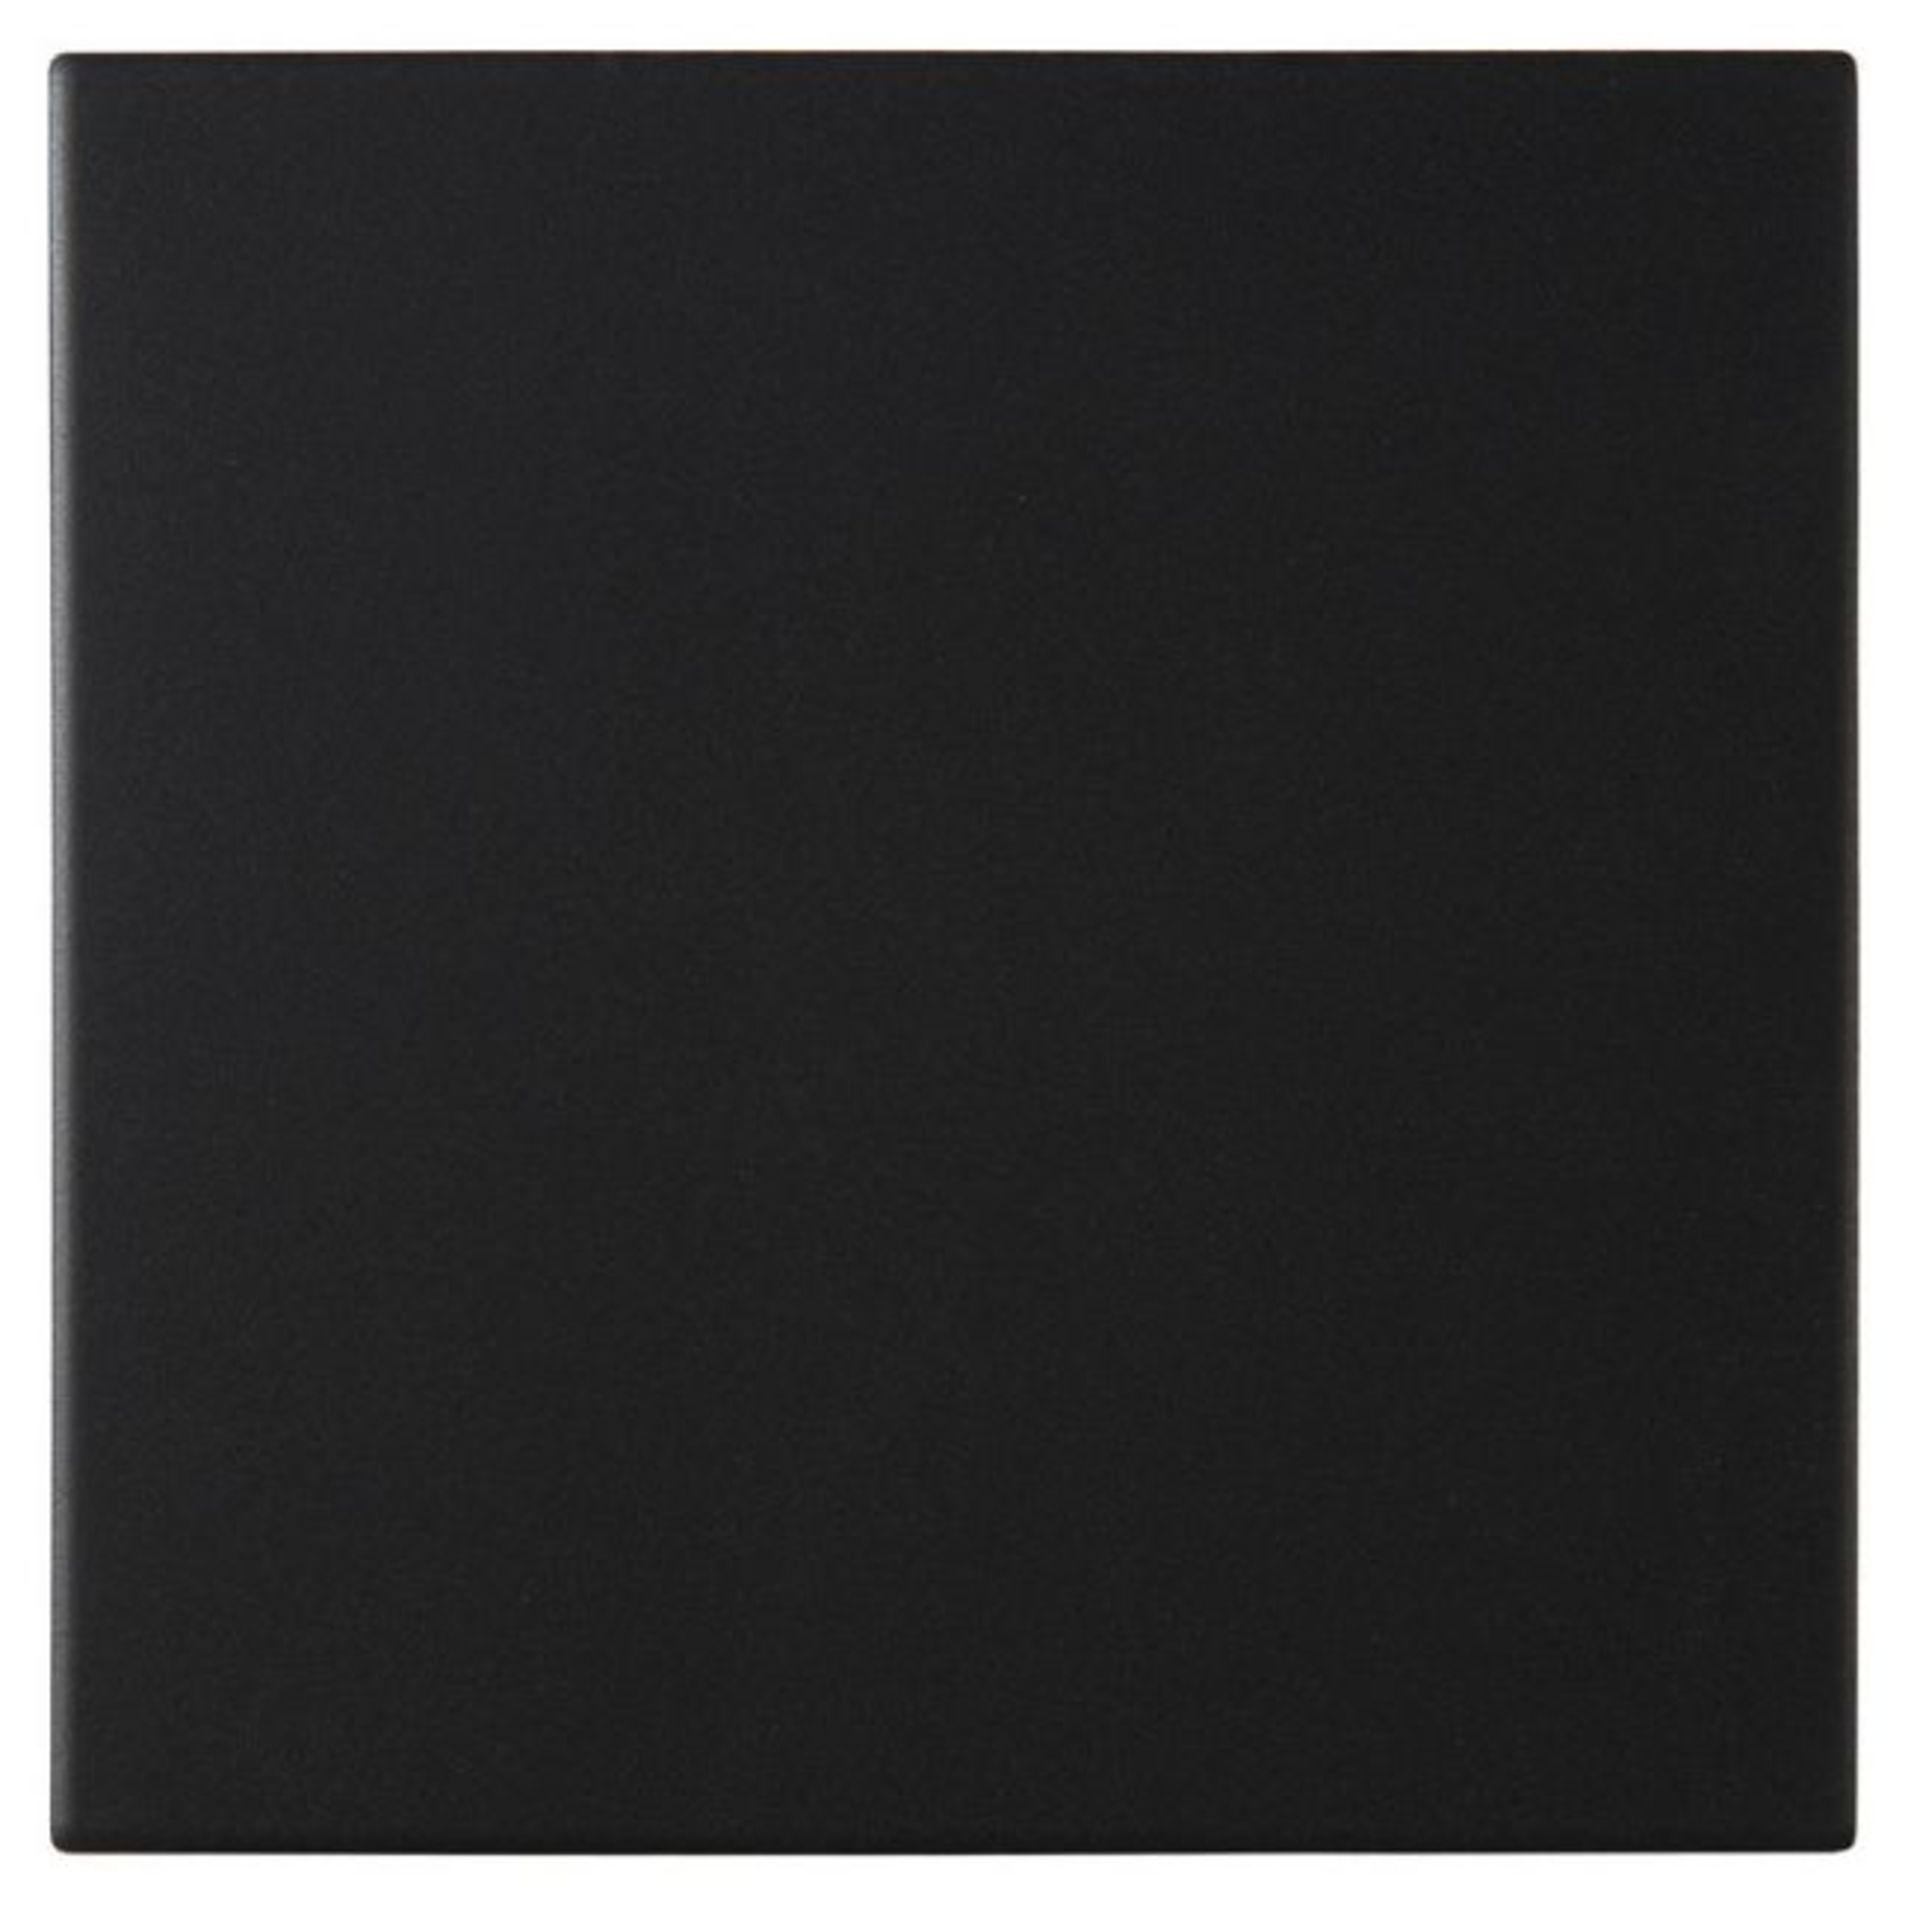 New 14.5m2 Pescaro Black Matt Plain Ceramic Wall & Floor Tile. 33.3x33.3cm Per Tile. Slip Resi... - Image 2 of 2